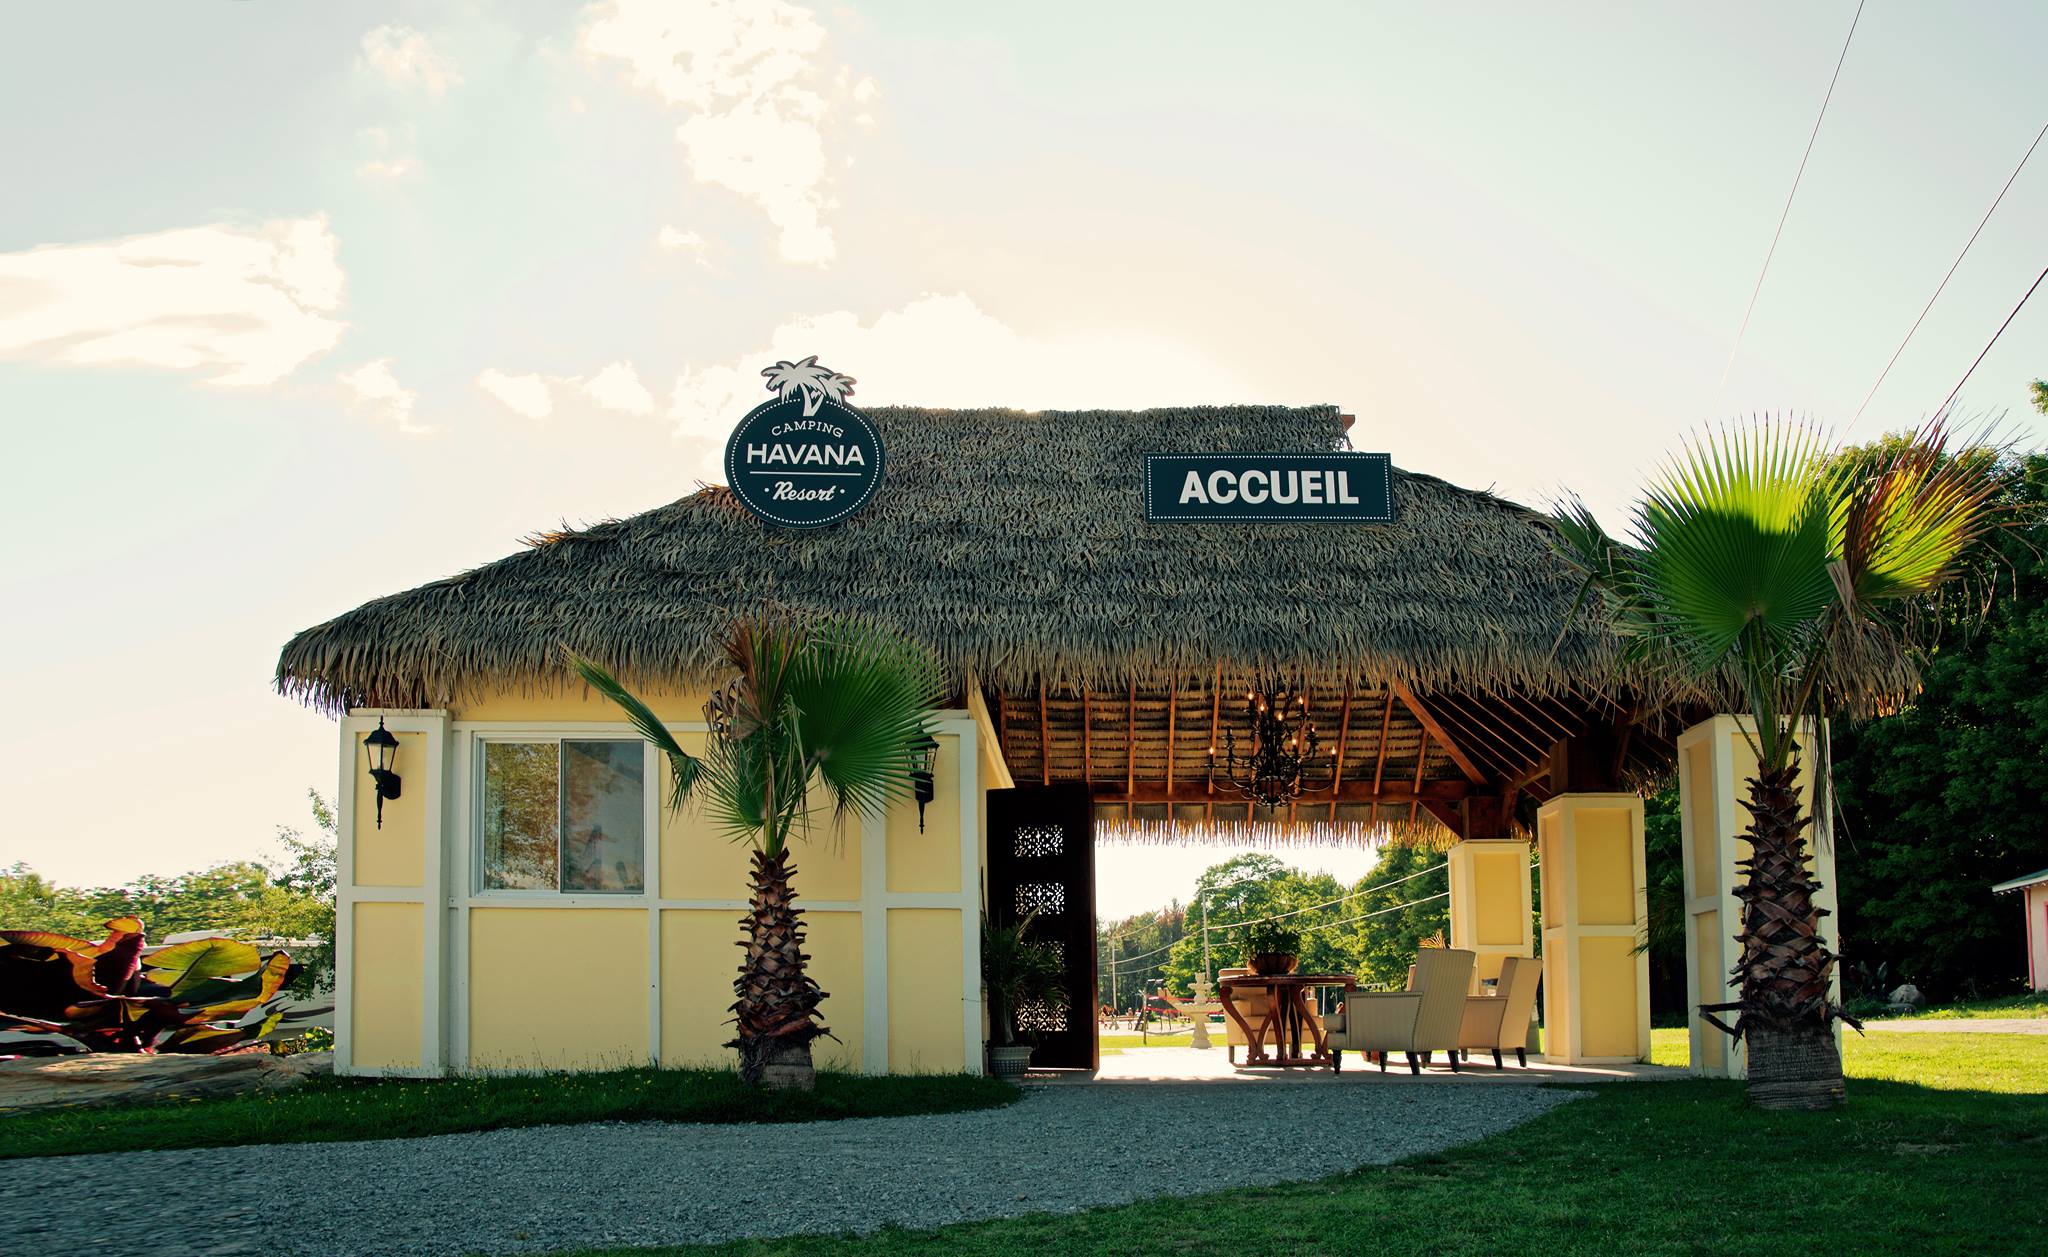 L'accueil du camping Havana Resort, à Maricourt, en Estrie, lors de la période estivale.